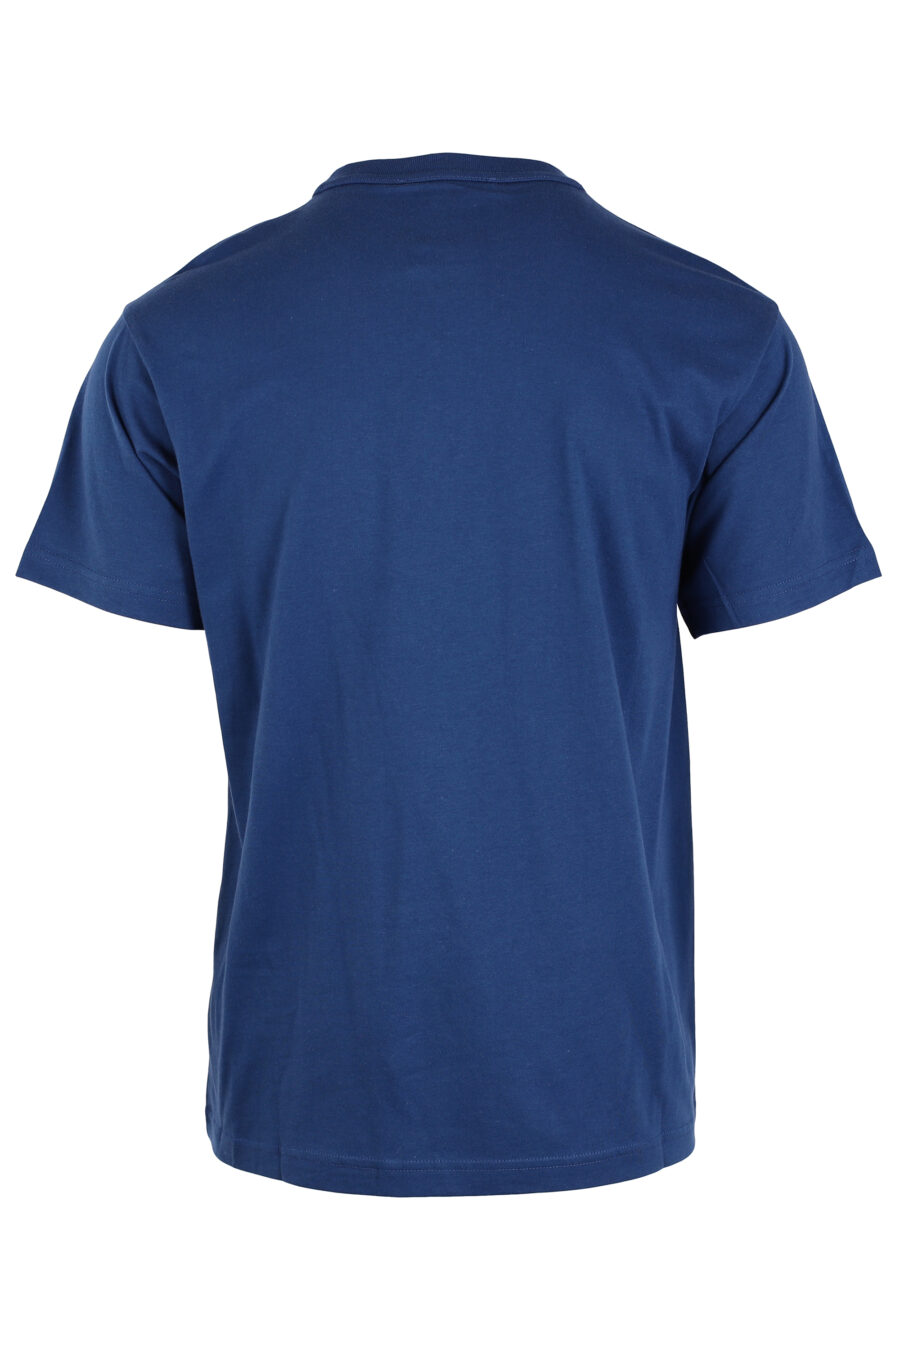 T-shirt azul-marinho com o logótipo do tornassol verde - IMG 4037